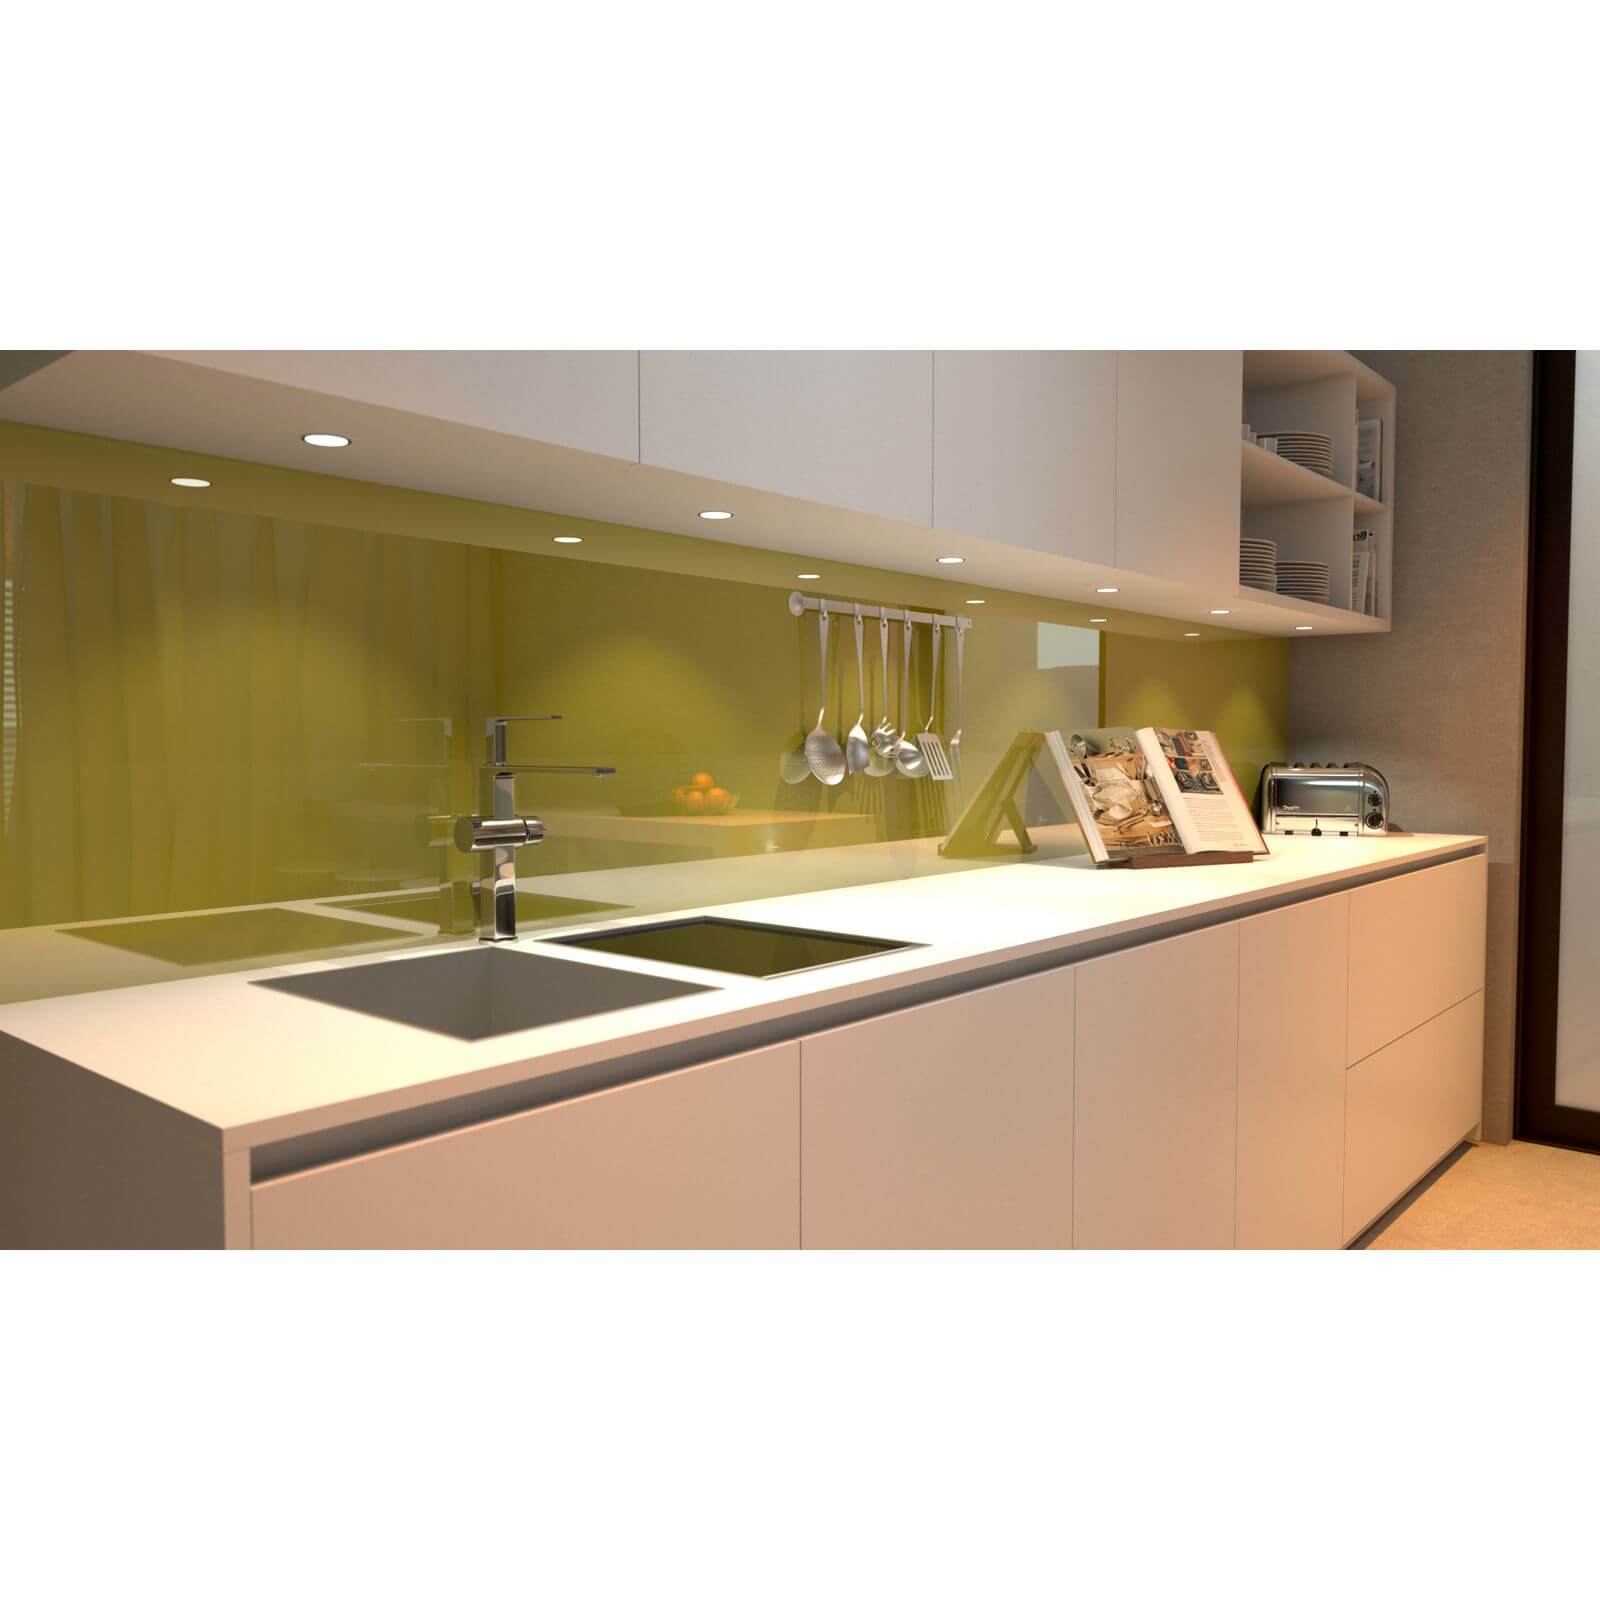 Zenolite Acrylic Kitchen Splashback Panel - 2440 x 605 x 4mm - Forest